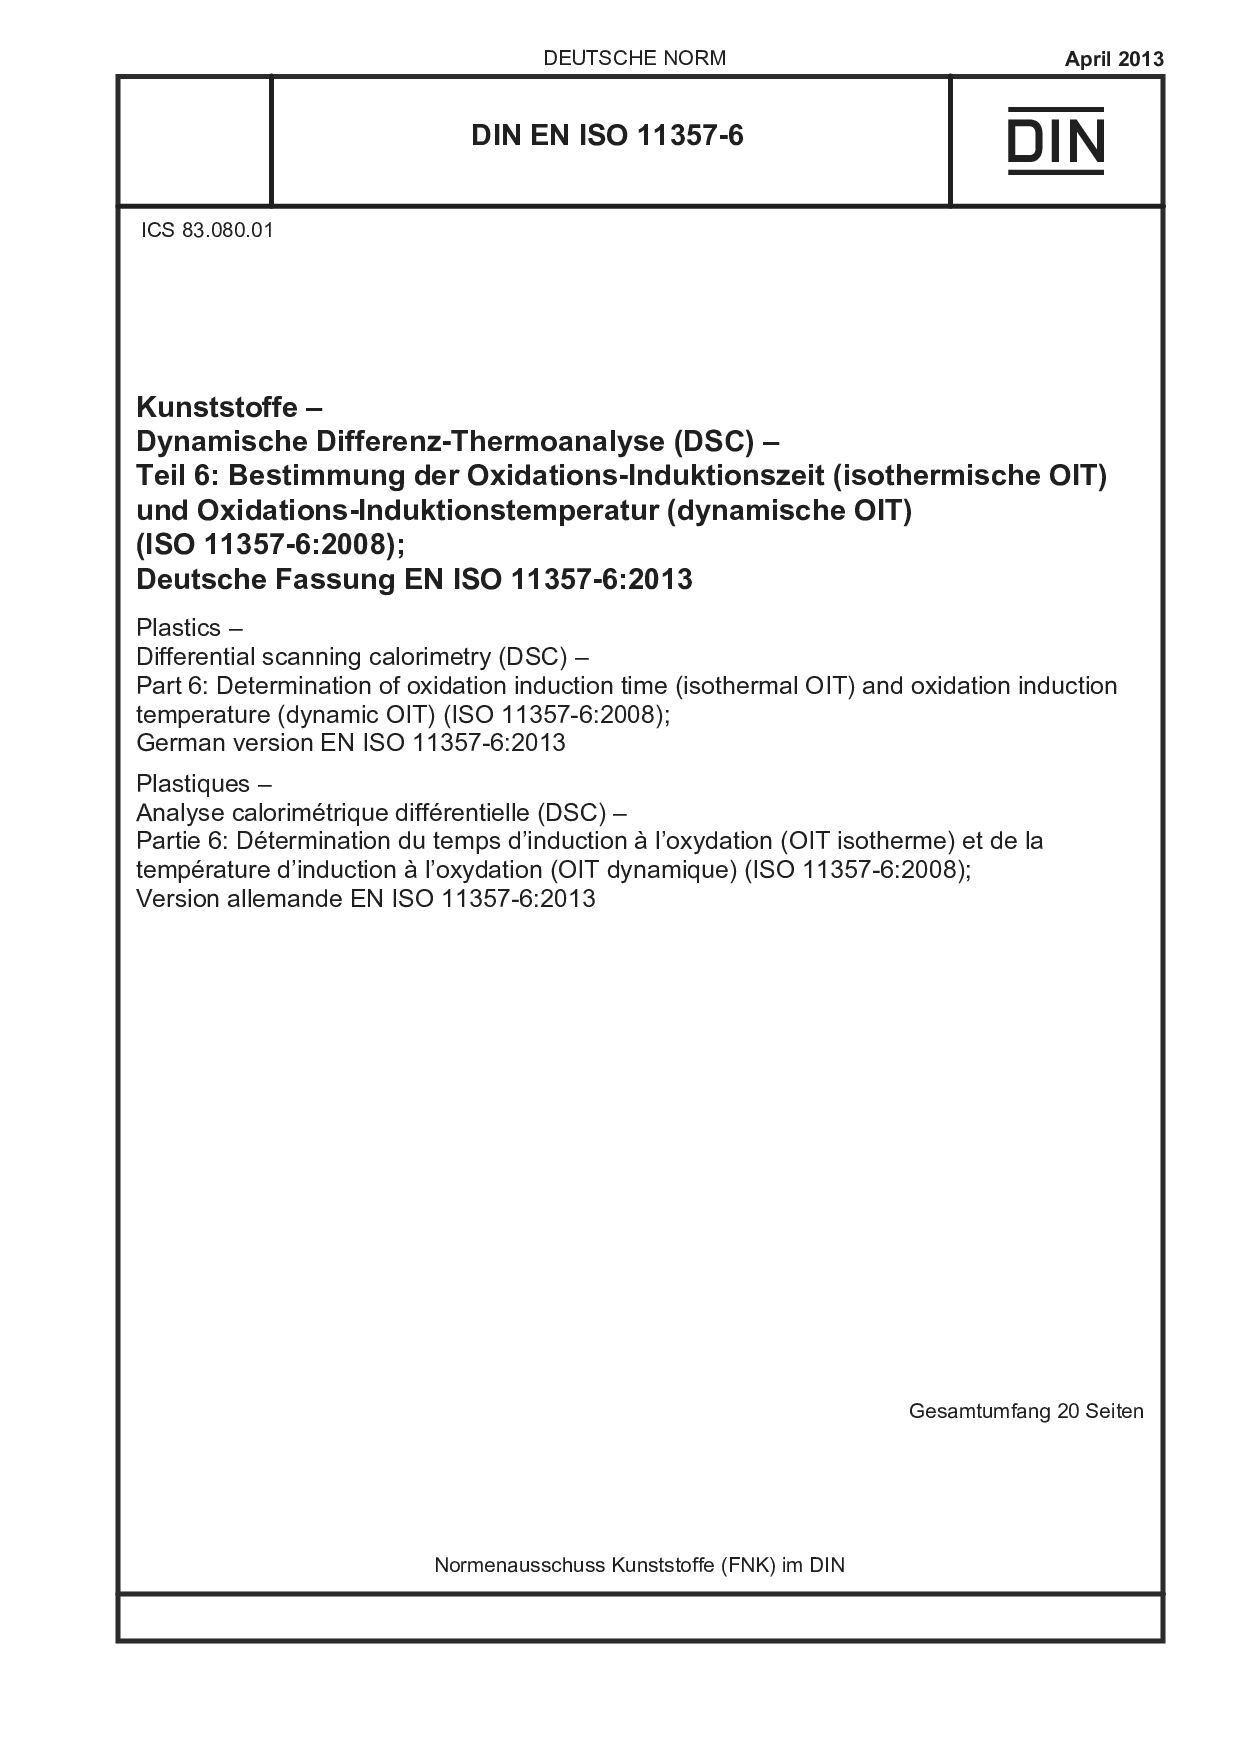 DIN EN ISO 11357-6:2013封面图